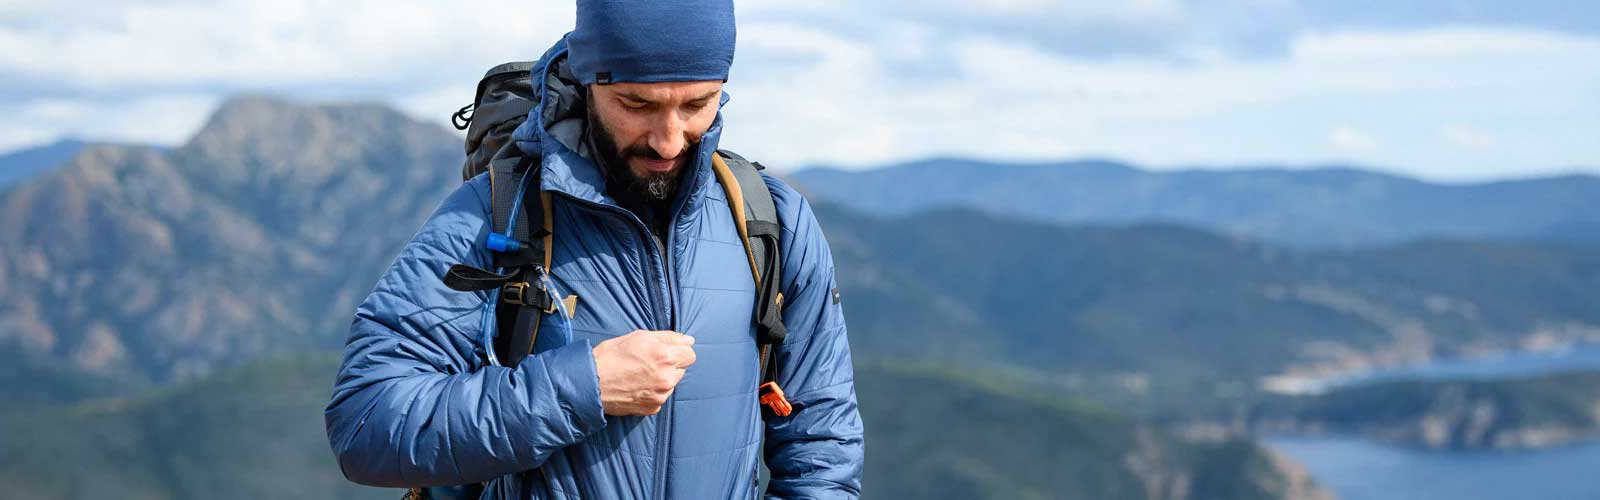 登山・ハイキング・トレッキング | ダウン・中綿ジャケット・ベスト